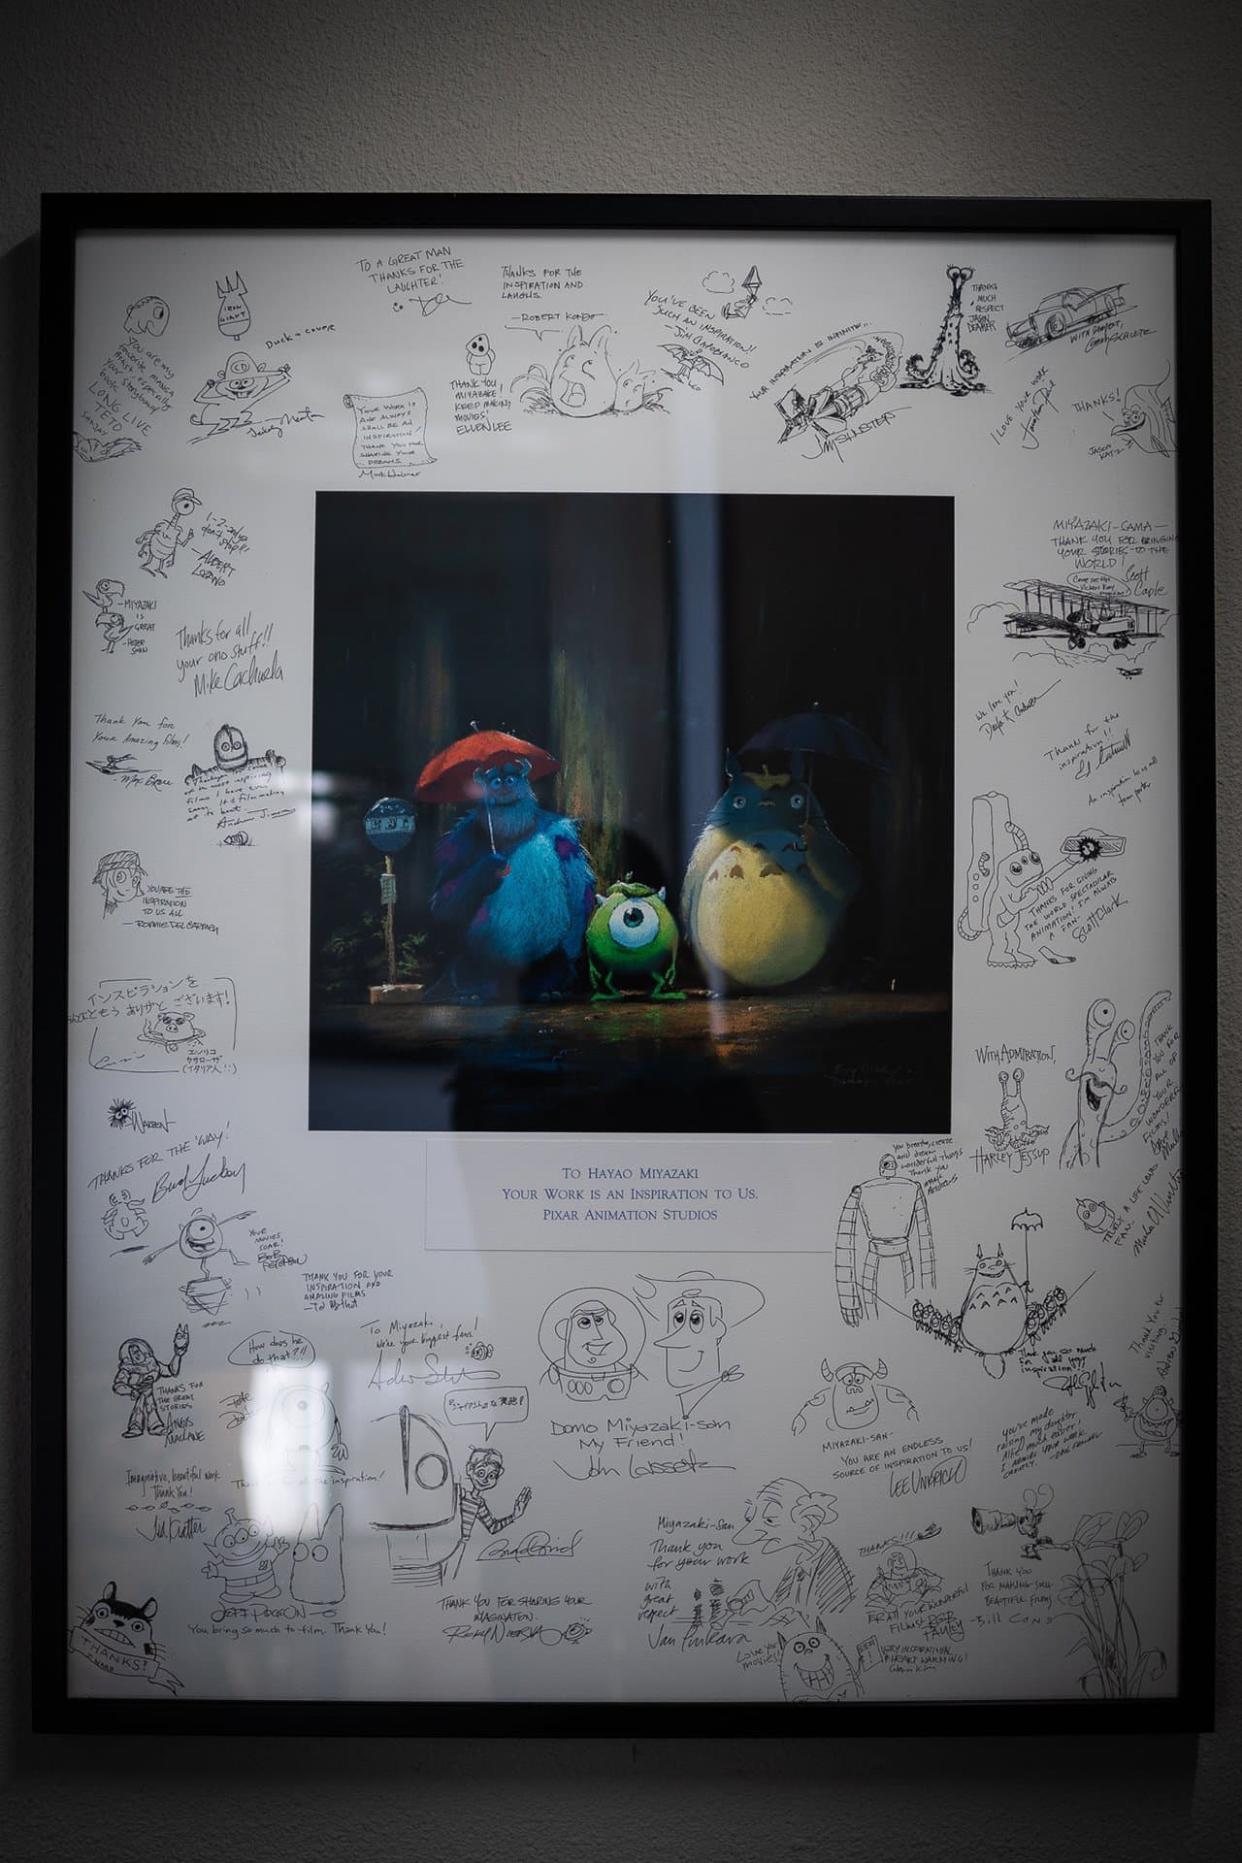 Le dessin envoyé à Hayao Miyazaki, de la part des équipes de Pixar - Pixar - Ghibli